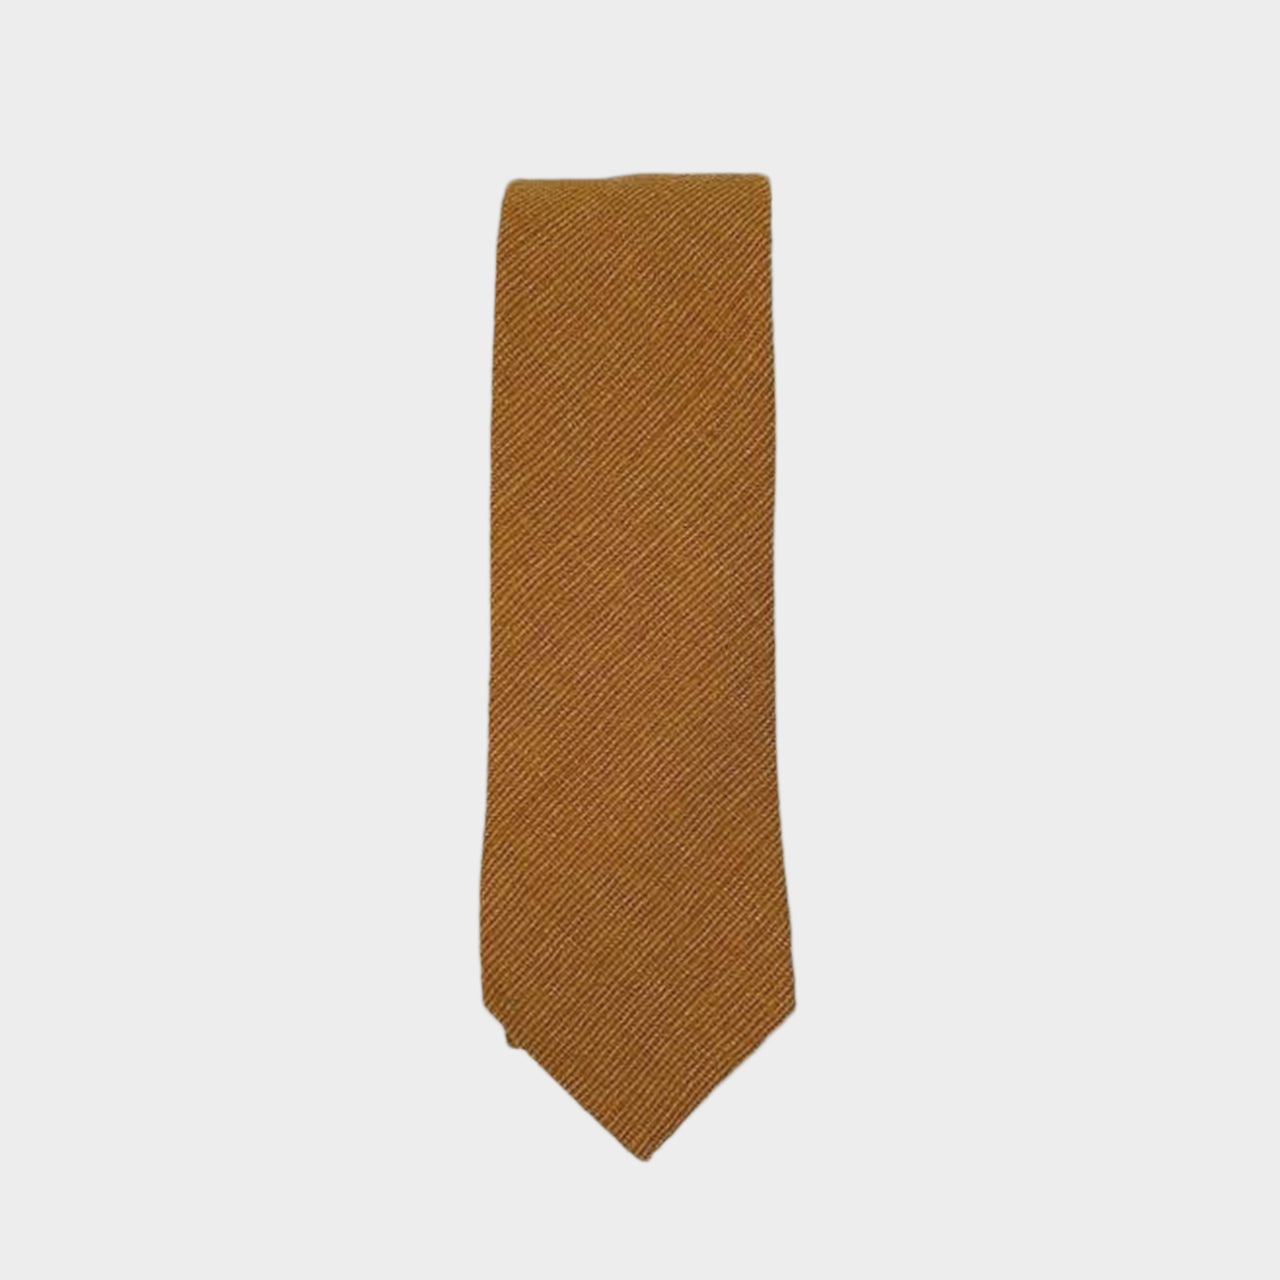 HATFIELD - Men's Tie